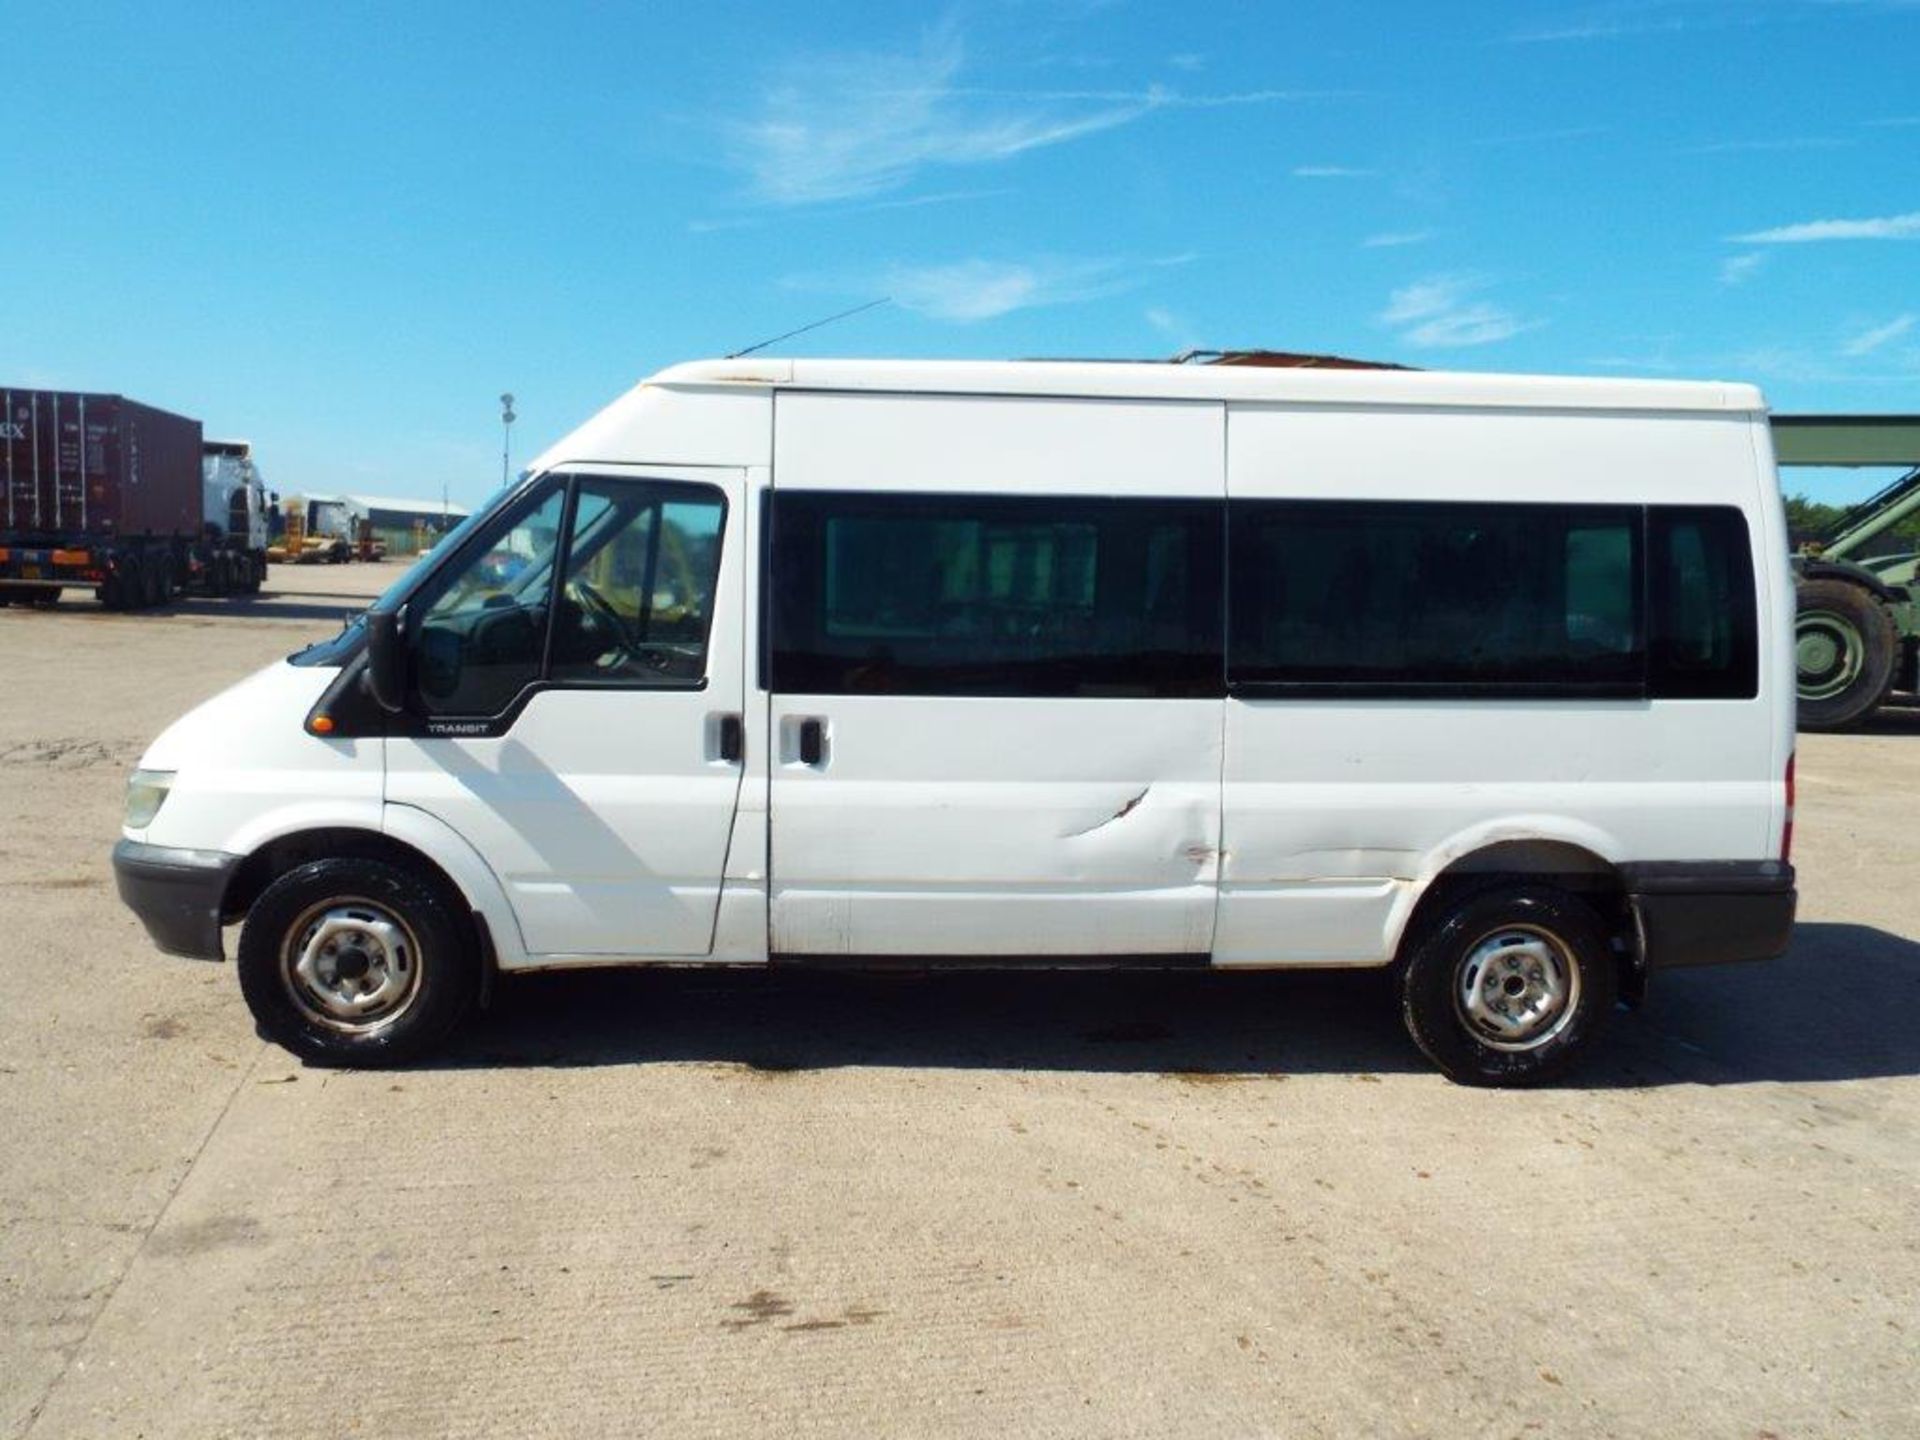 Ford Transit 9 Seat Minibus - Image 4 of 21